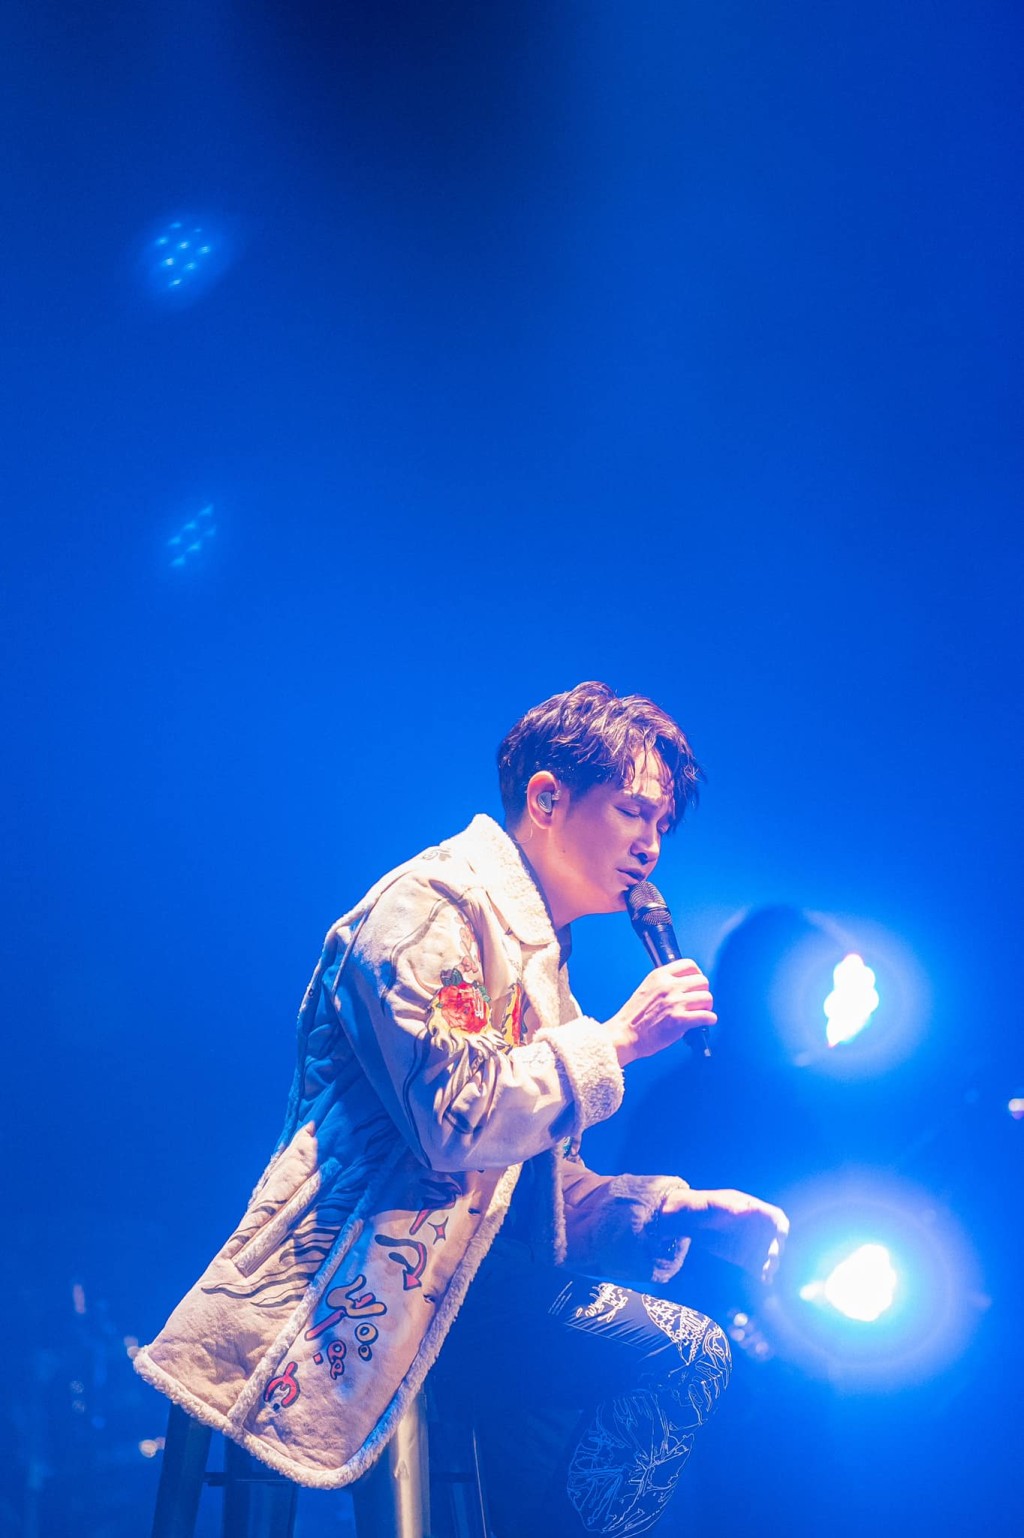 罗文裕曾在2015年及2021年获得金曲奖最佳客语歌手奖，两度封歌王。